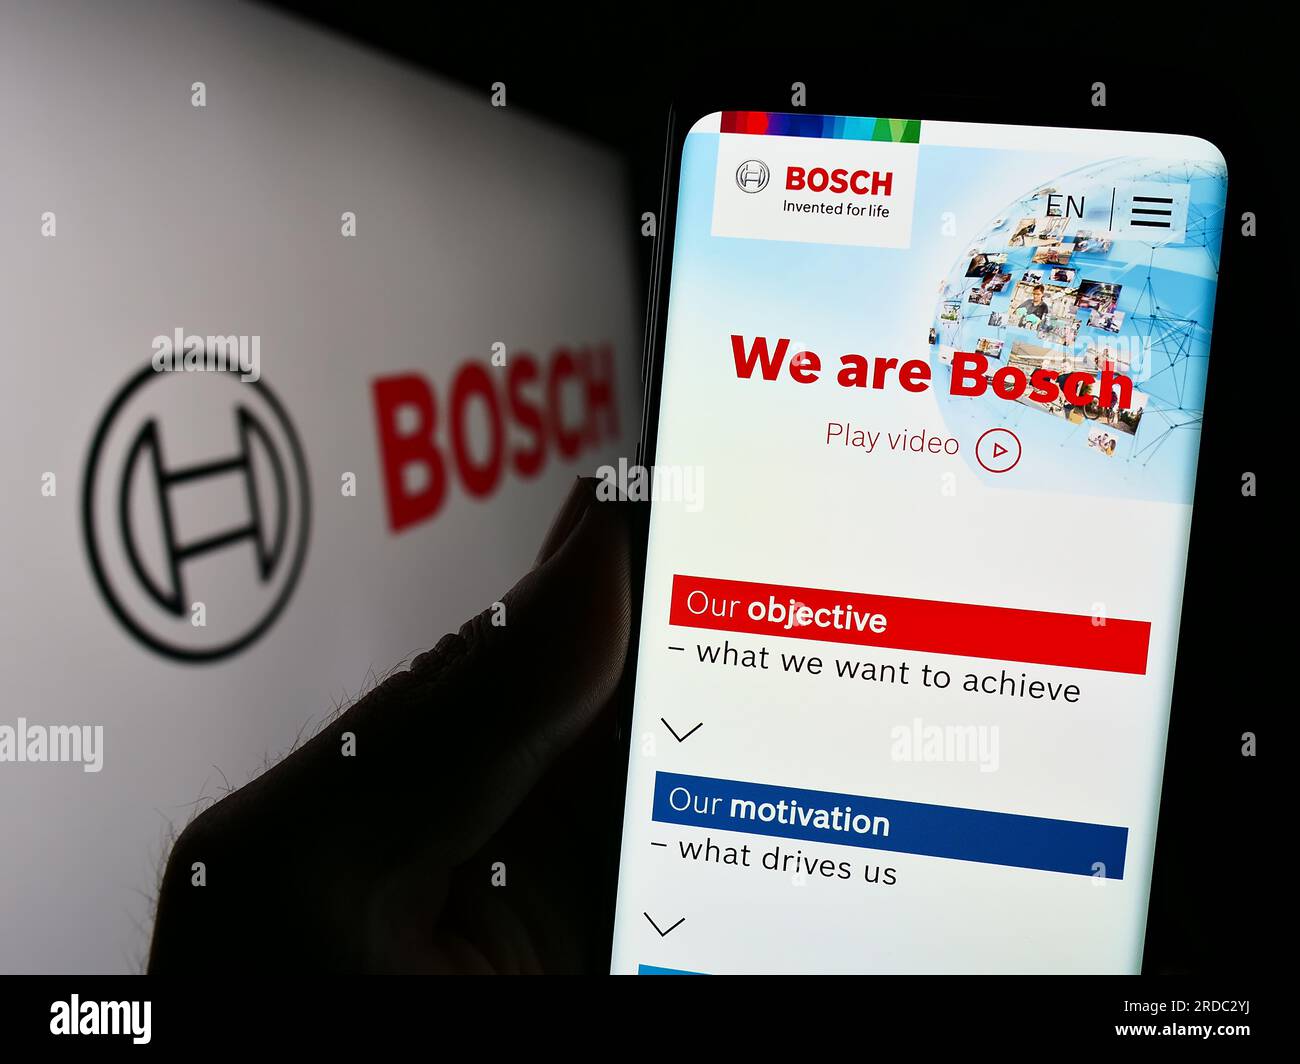 Persona que sostiene el teléfono inteligente con el sitio web de la empresa de ingeniería alemana Robert Bosch GmbH en la pantalla con el logotipo. Enfoque en el centro de la pantalla del teléfono. Foto de stock